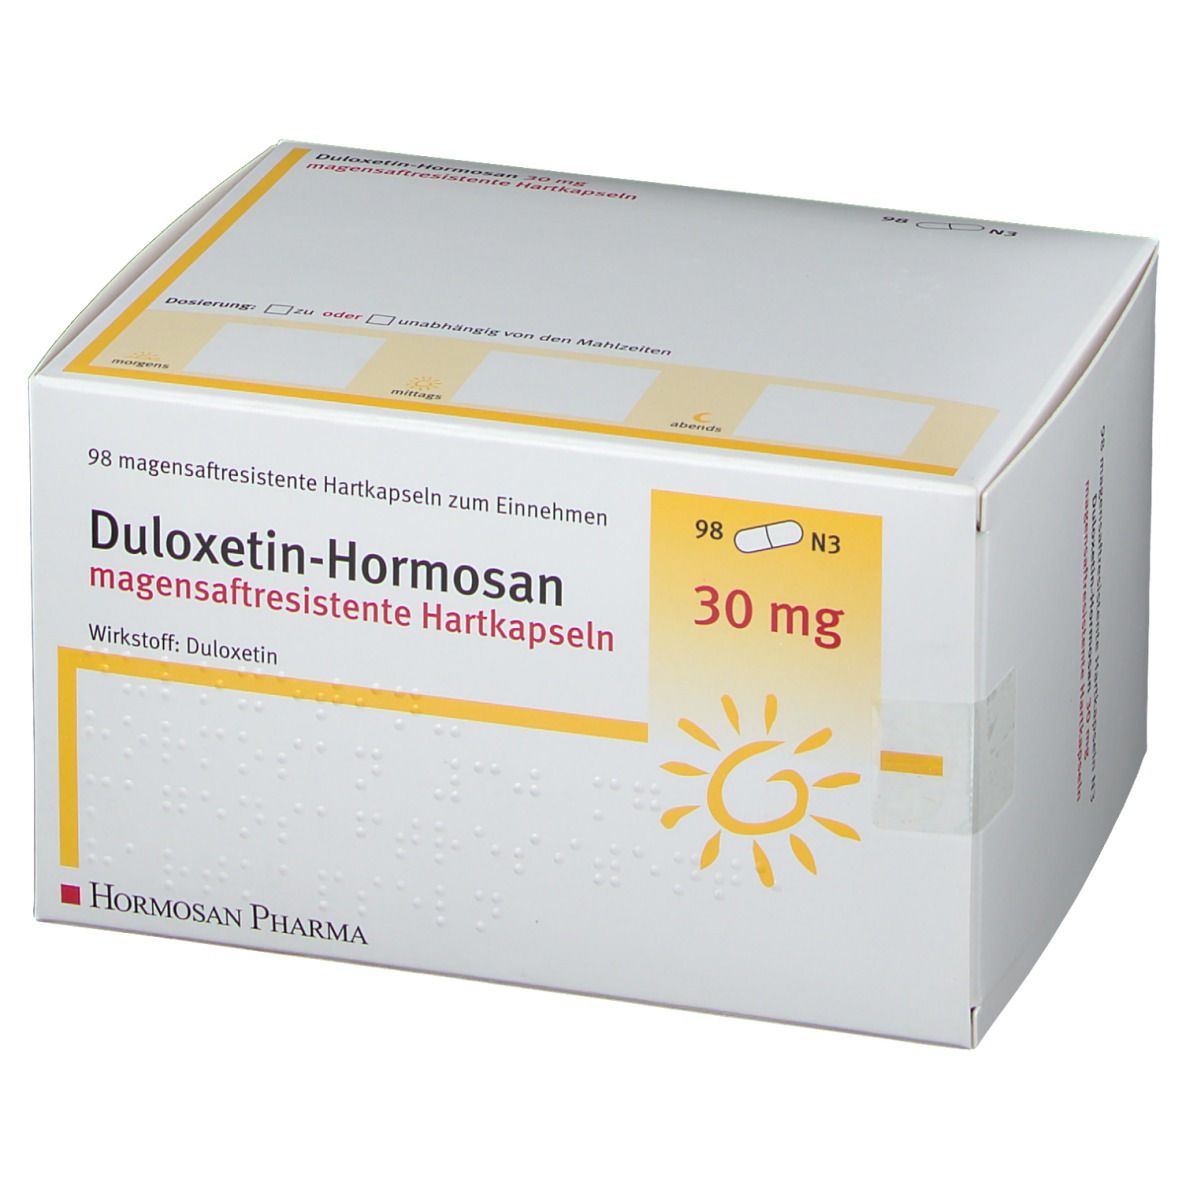 Duloxetin-Hormosan 30 mg